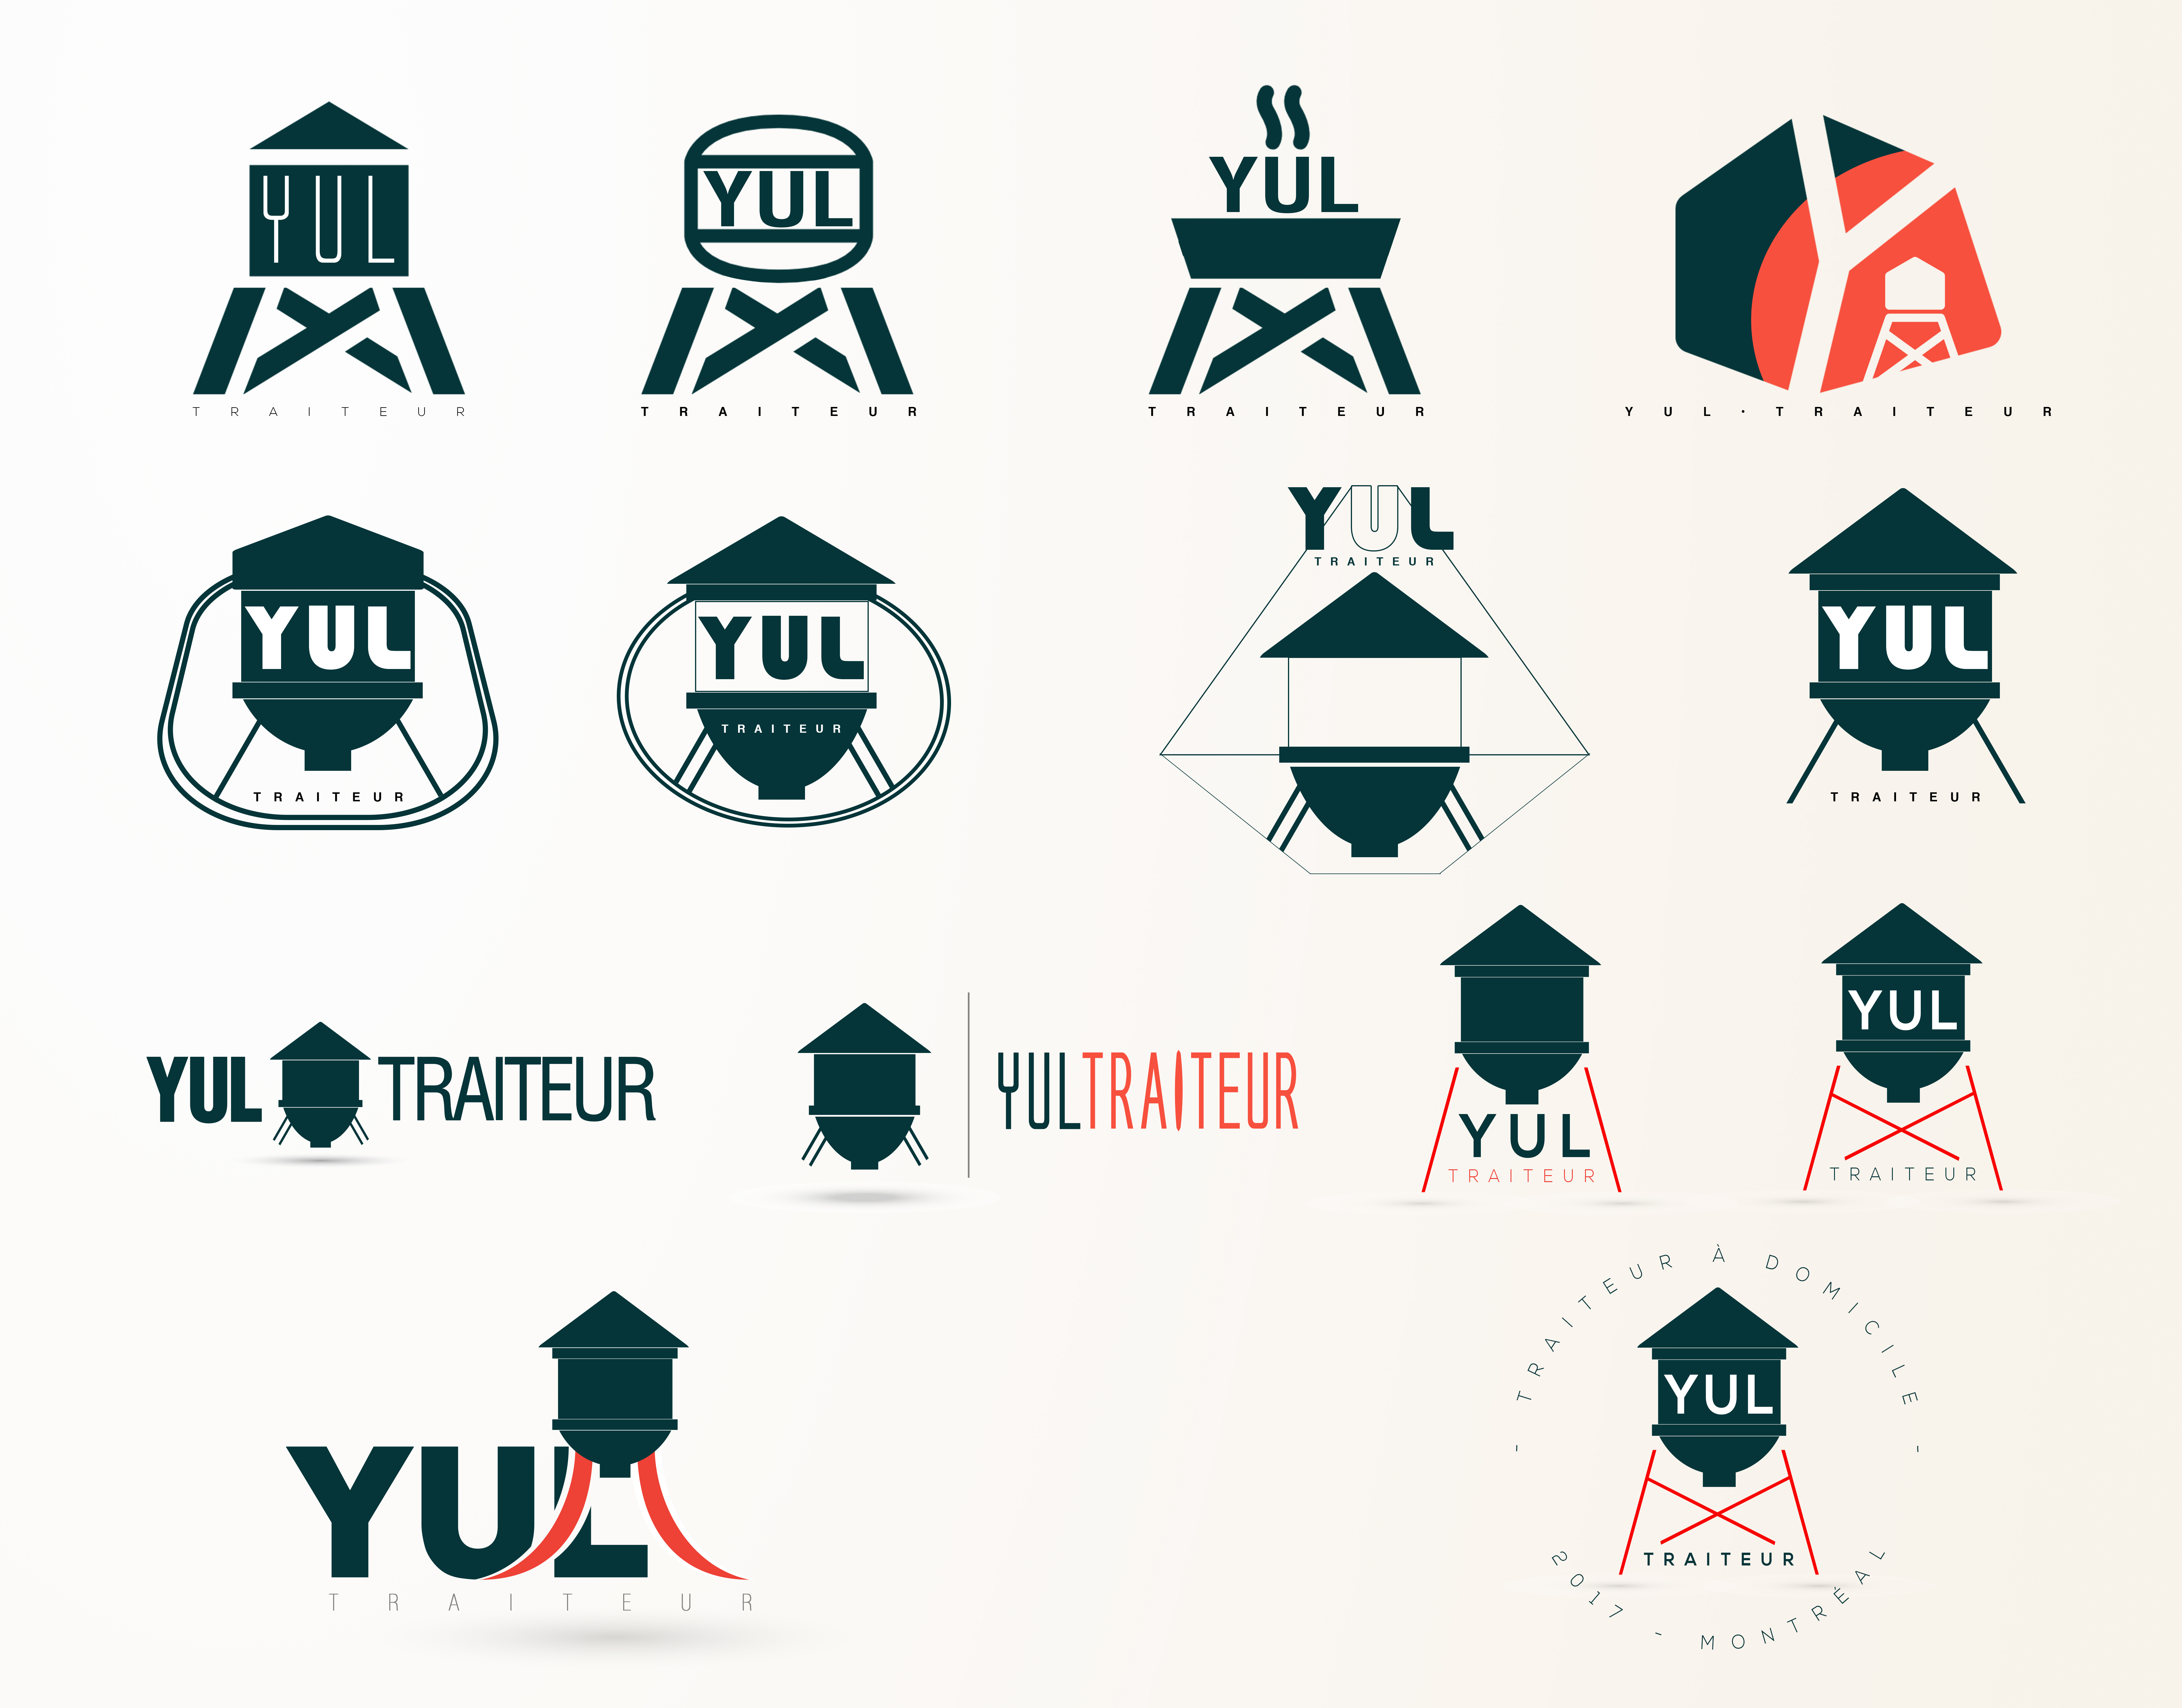 planche1--logos-yul-traiteur